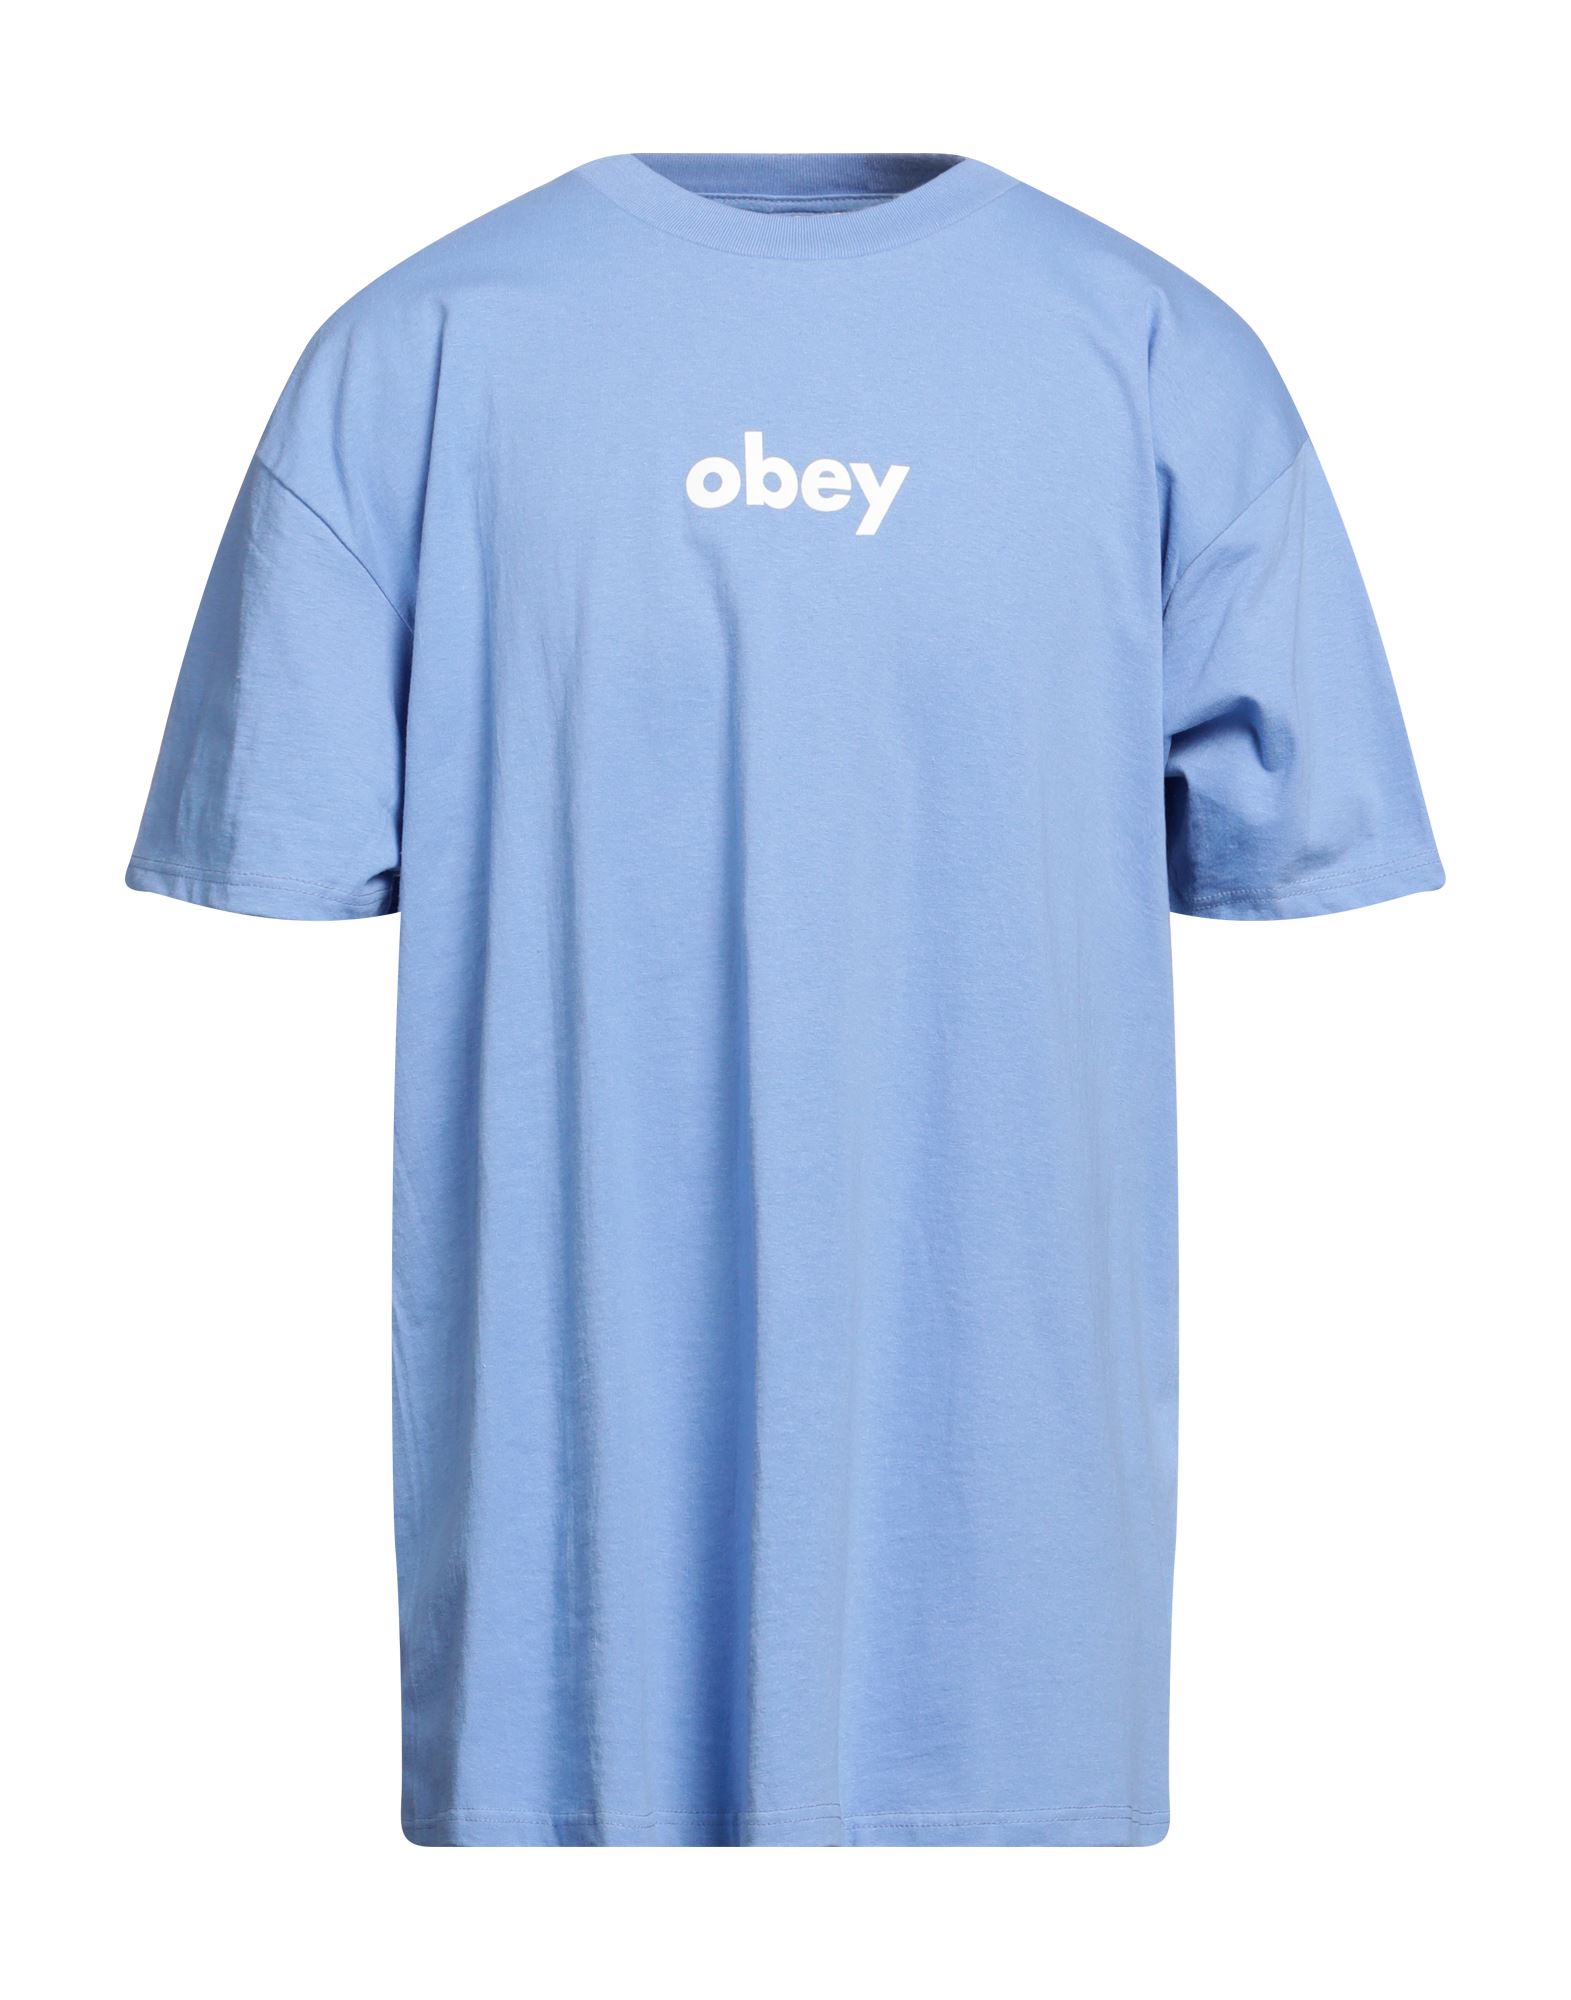 OBEY T-shirts Herren Hellblau von OBEY